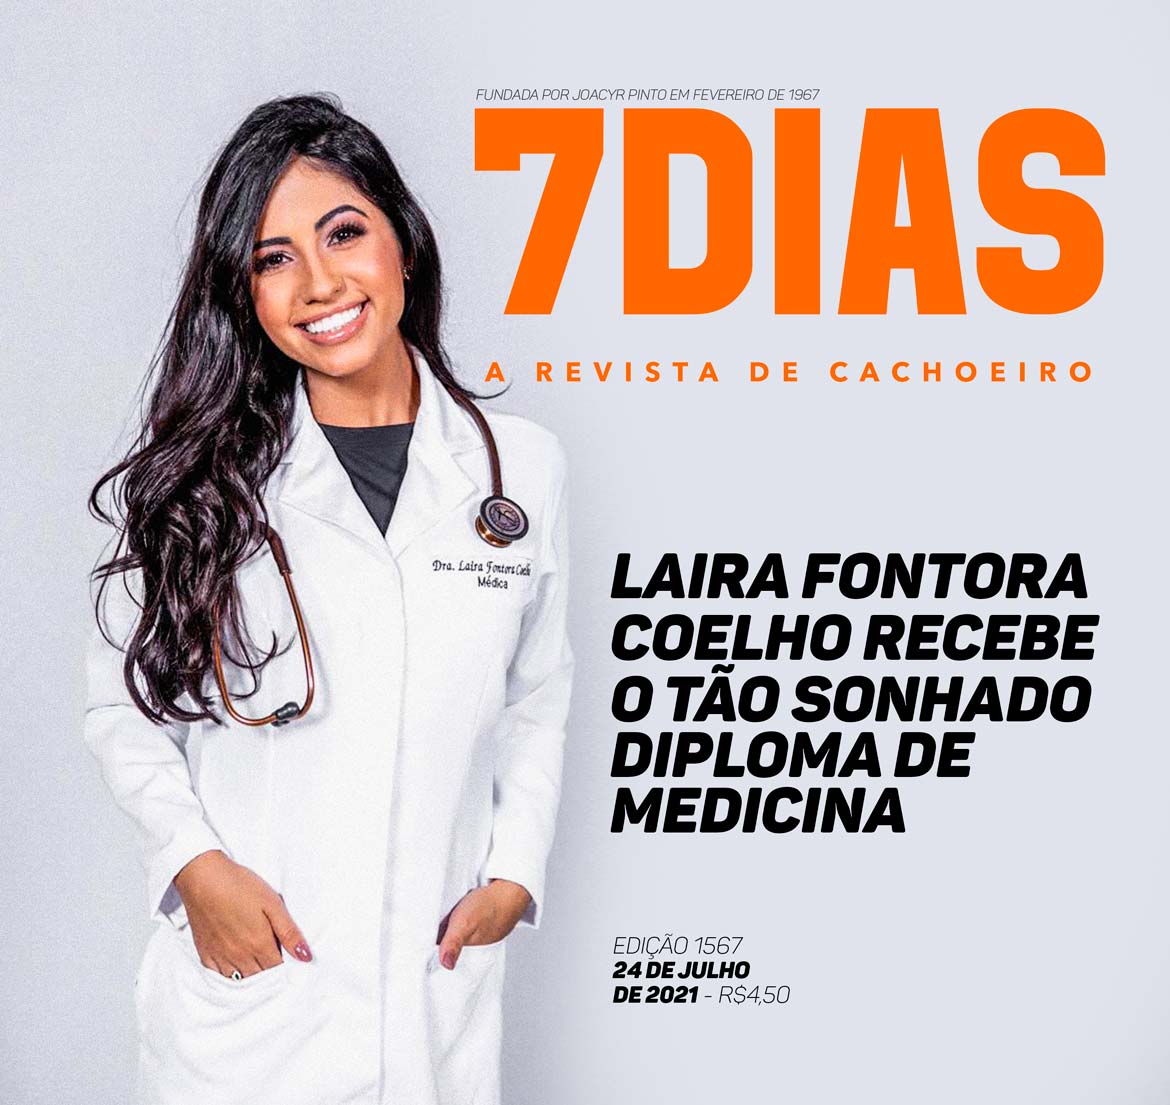  Laira Fontora Coelho recebe o tão sonhado diploma de Medicina